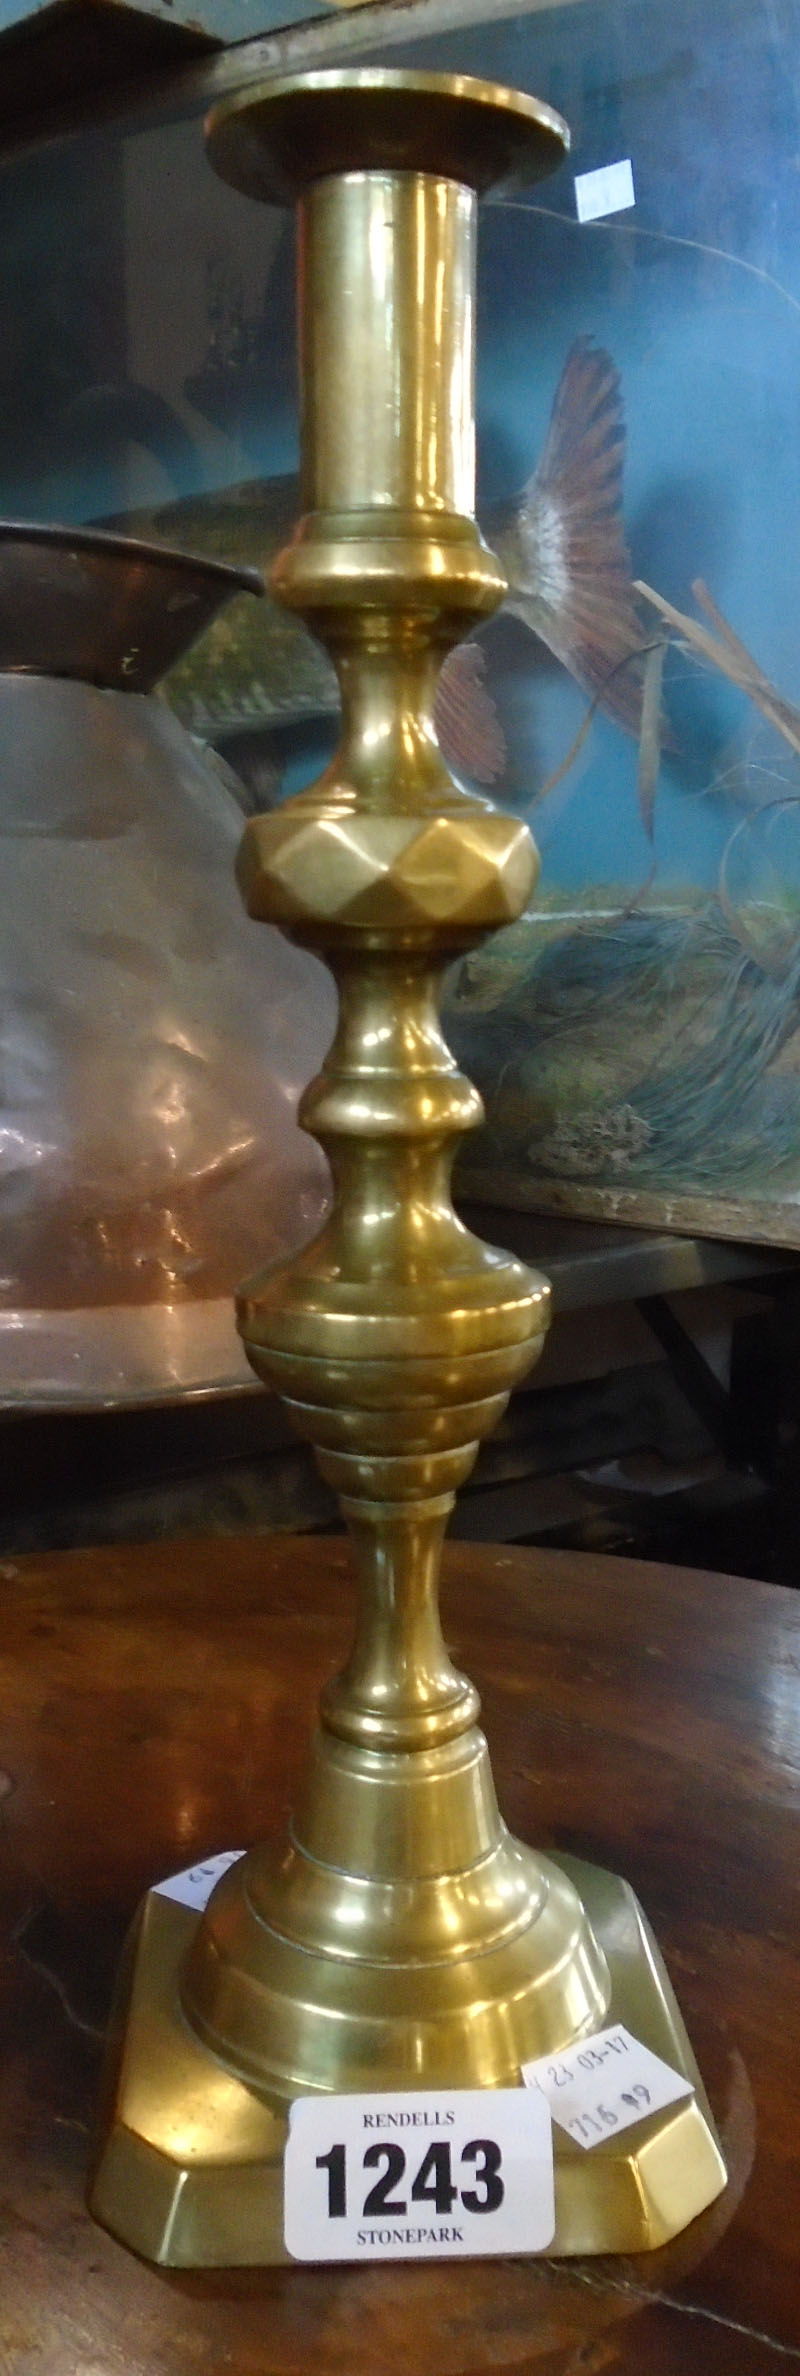 A heavy brass candlestick